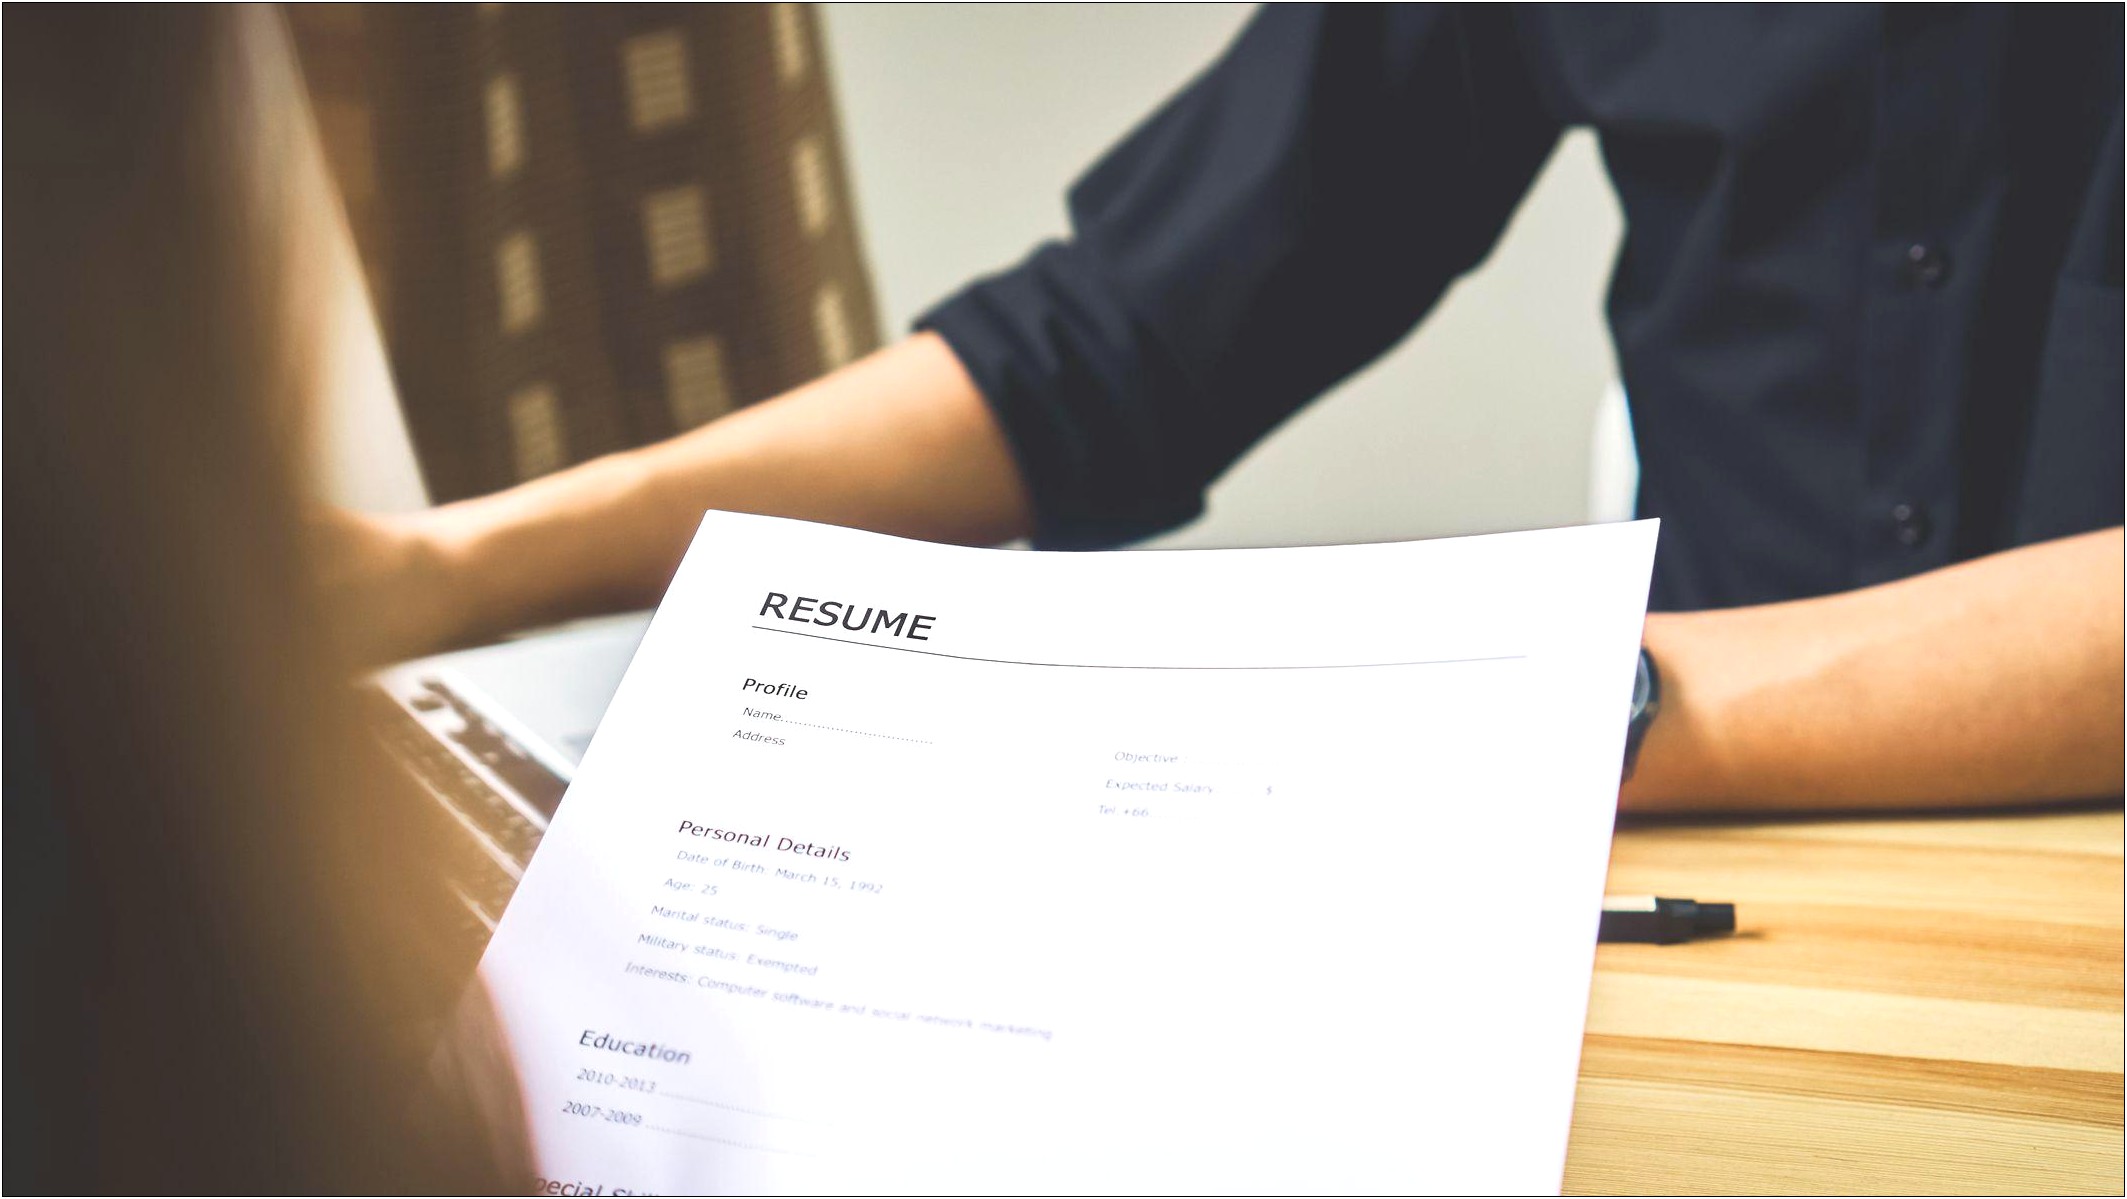 Ways To Write A Good Resume